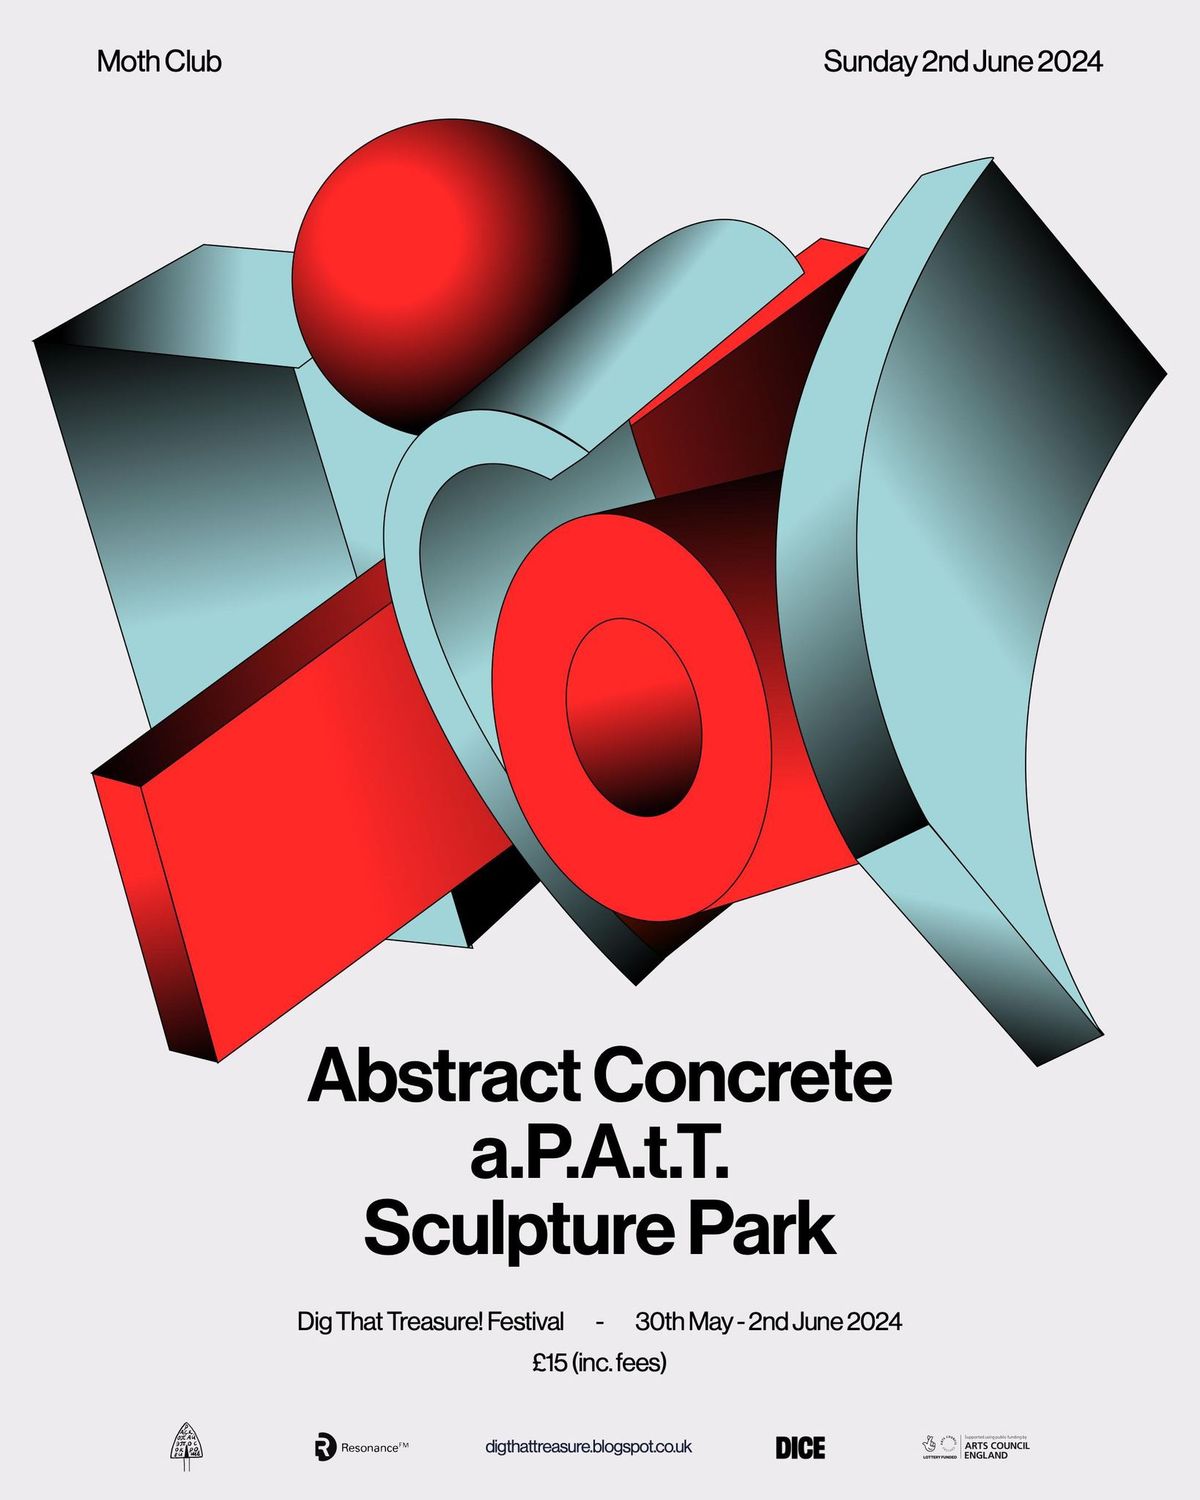 Abstract Concrete + a.P.A.t.T. + Sculpture Park